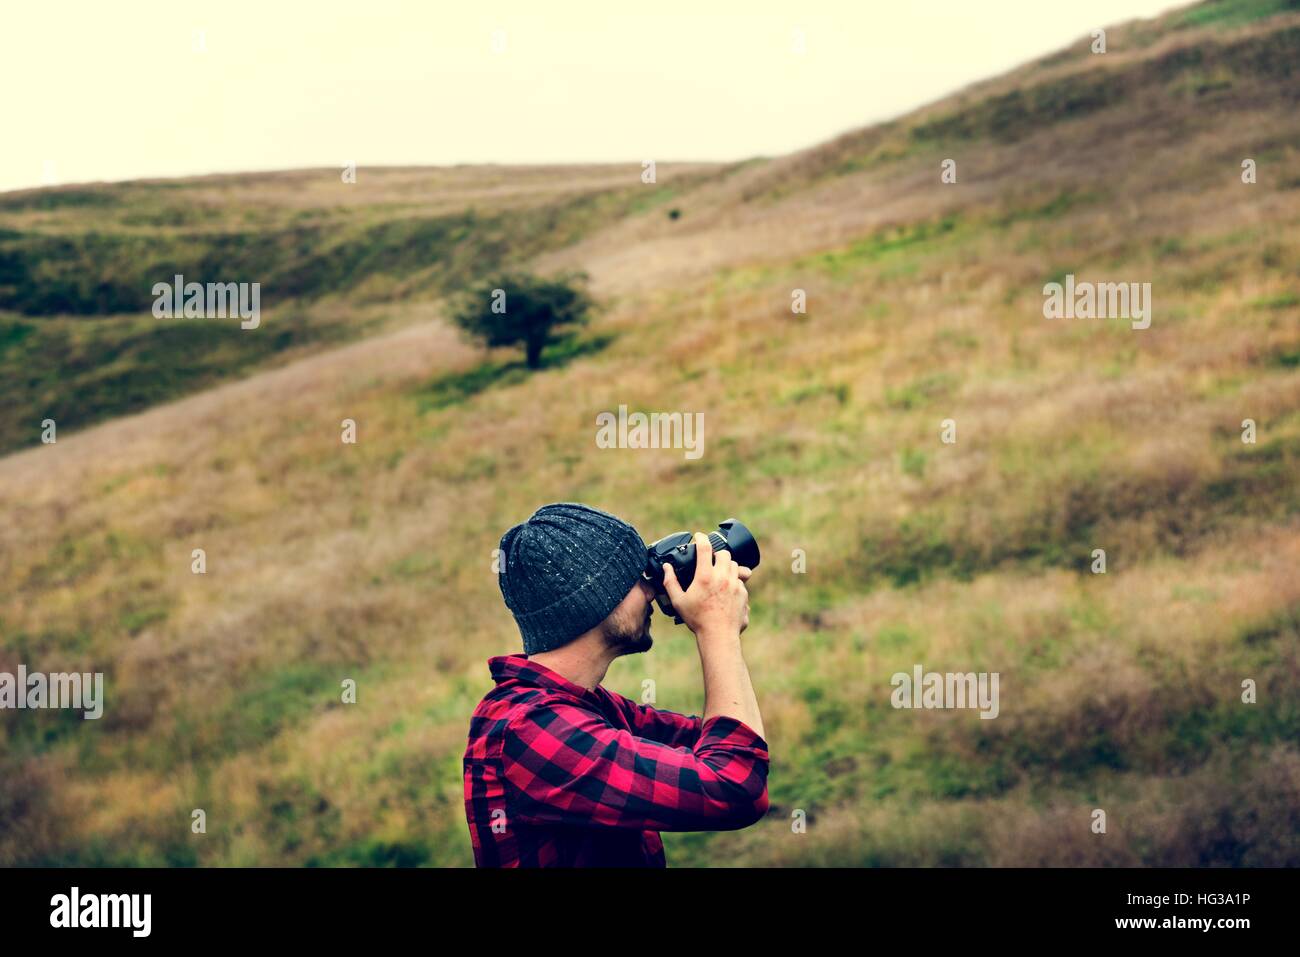 Uomo fotocamera fotografia della natura il concetto di ambiente Foto Stock